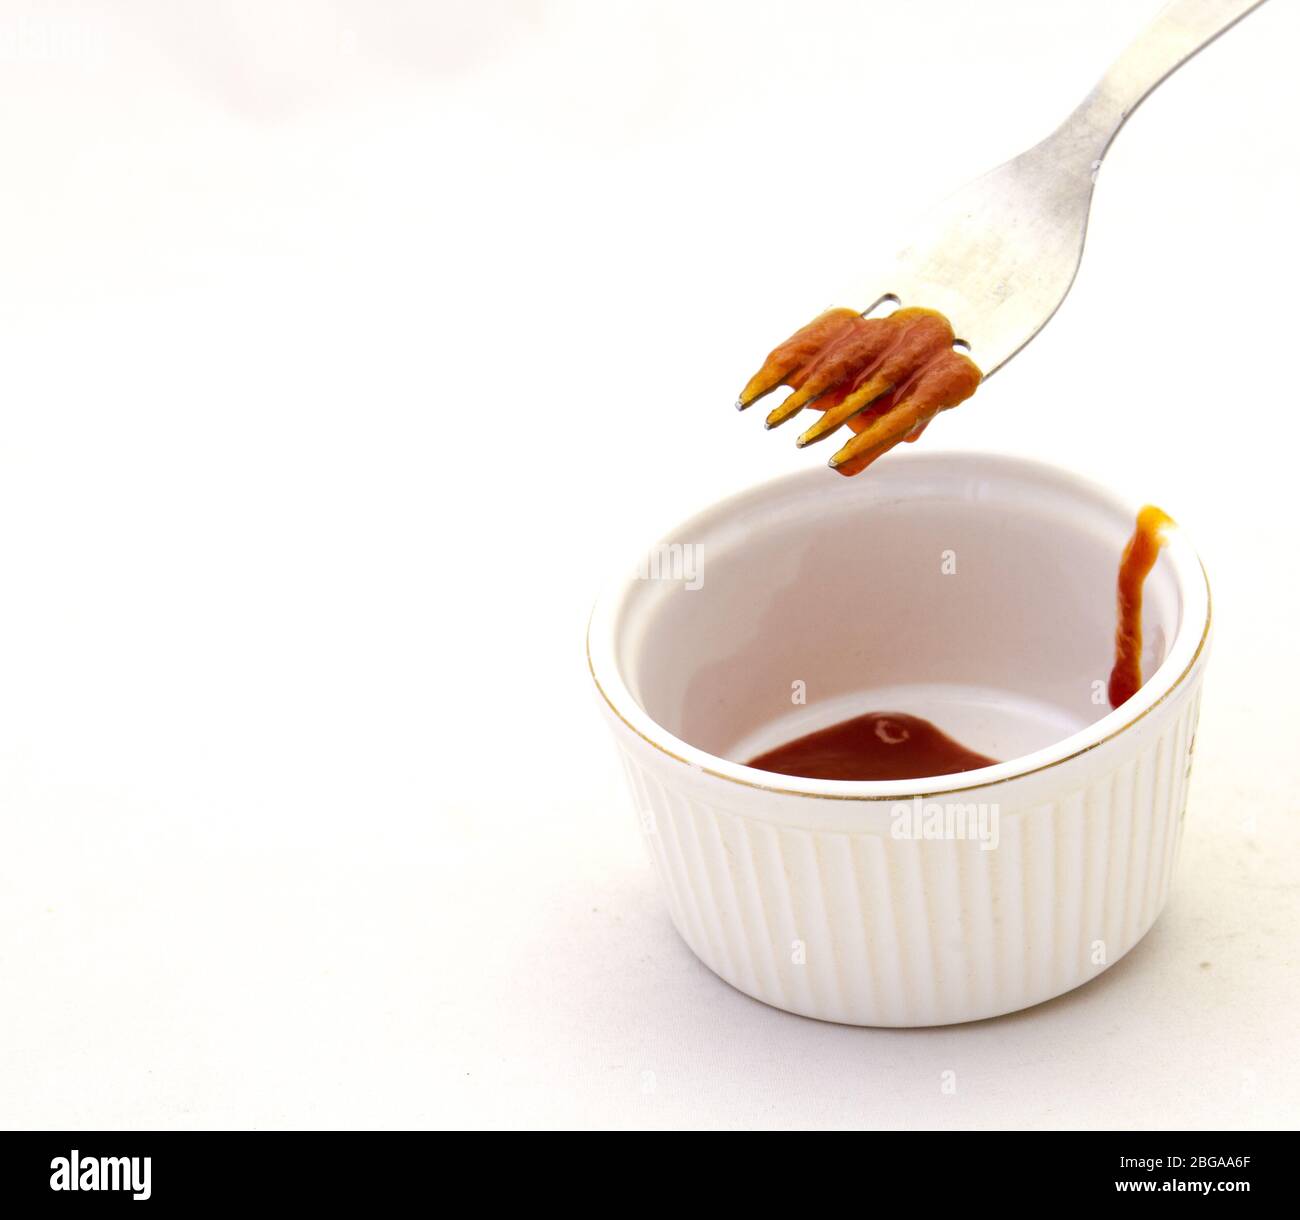 L'uso di una forchetta per raccogliere la zuppa di pomodoro da una ciotola è un'immagine di esercizio inutile in formato orizzontale Foto Stock